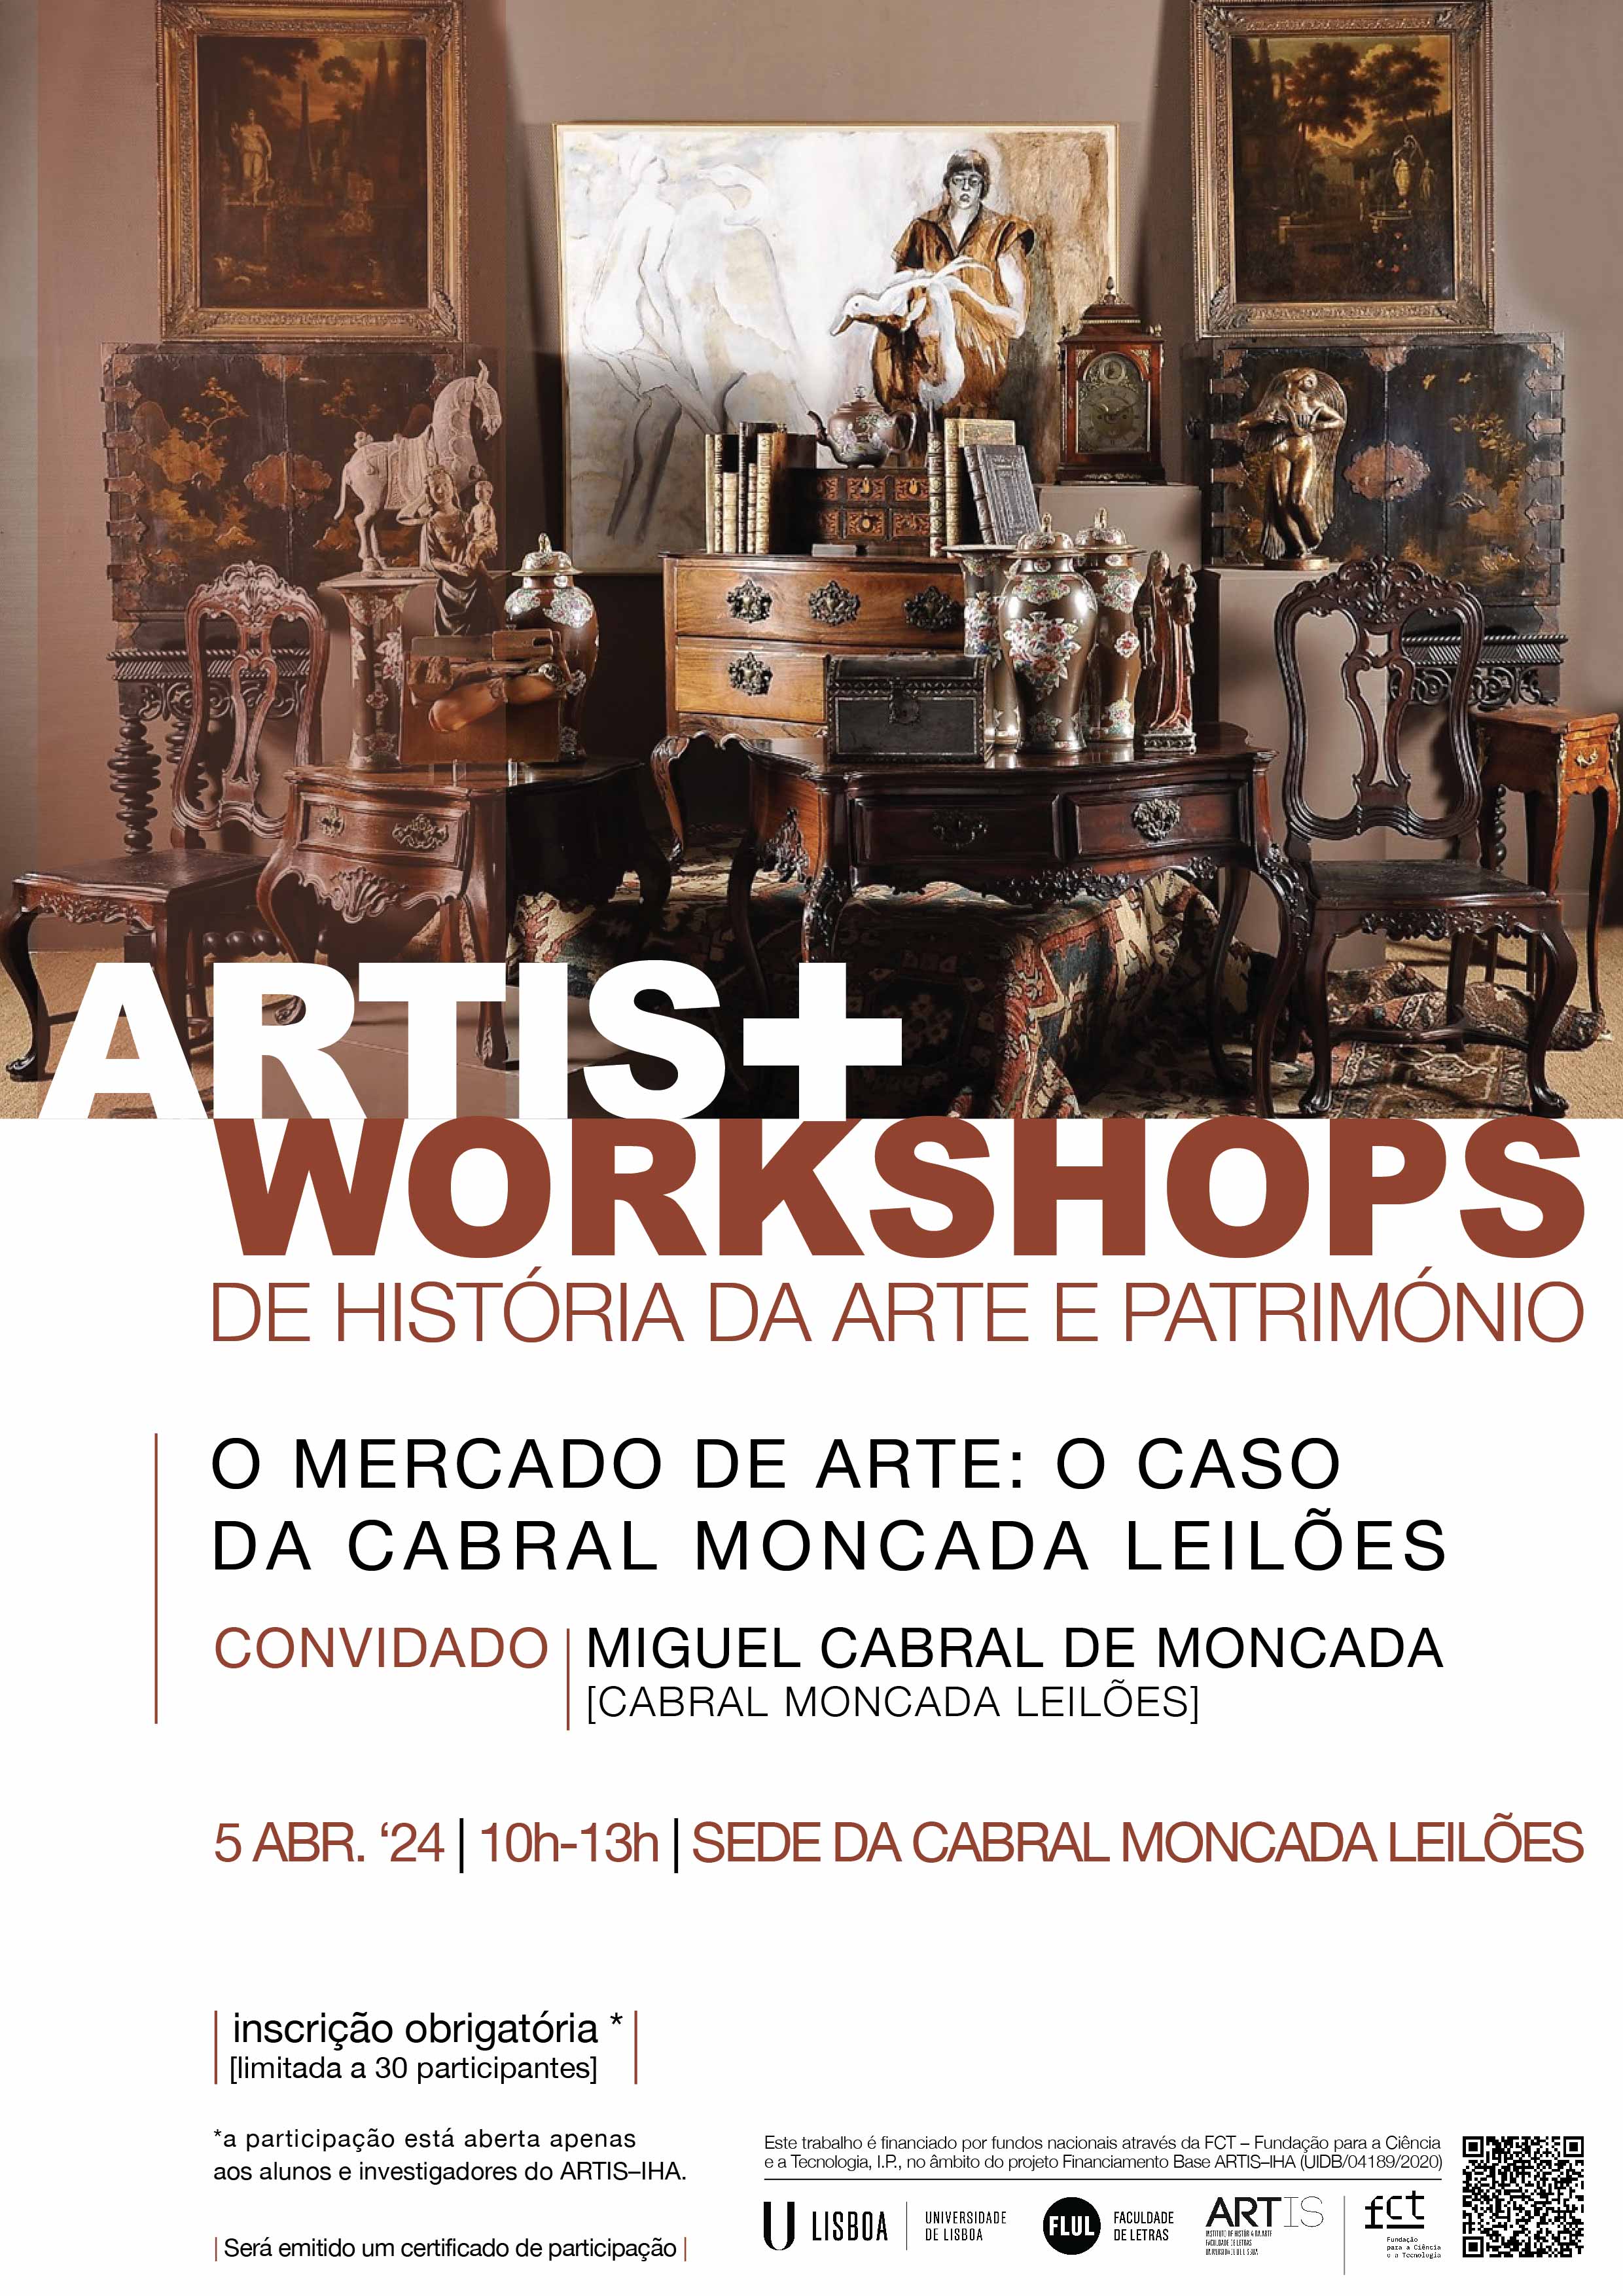 ARTIS+ [ART HISTORY AND HERITAGE WORKSHOPS] | O MERCADO DE ARTE: O CASO DA CABRAL MONCADA LEILES